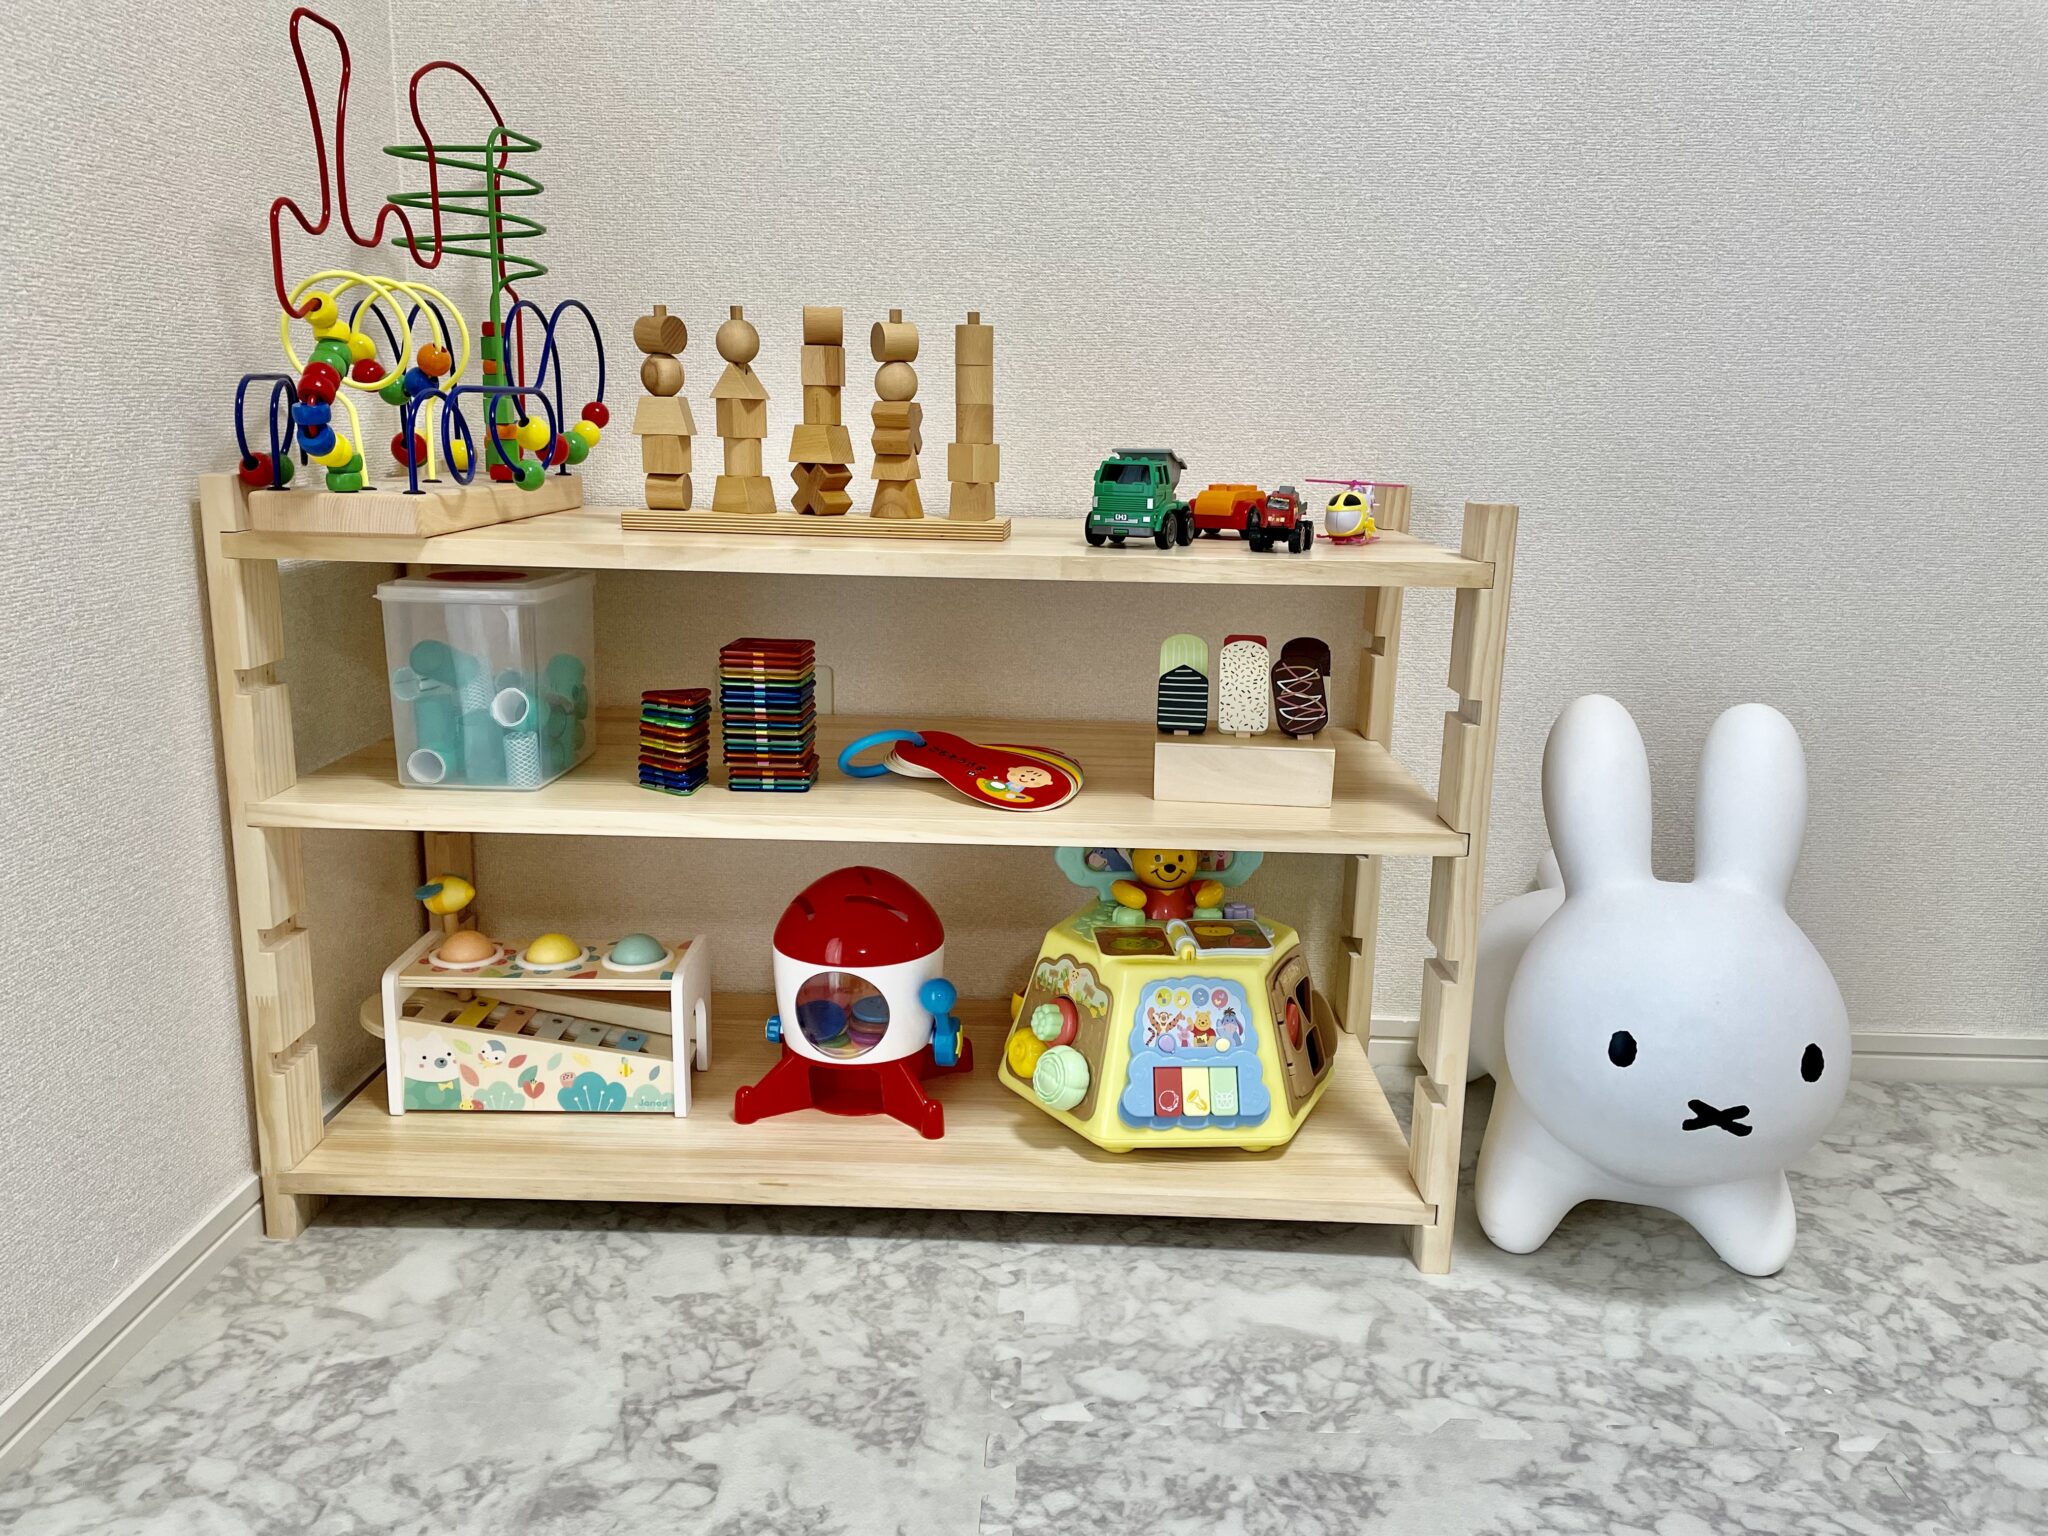 【初めてのDIY】 おもちゃ棚の作り方を紹介 | SAKIBLOG